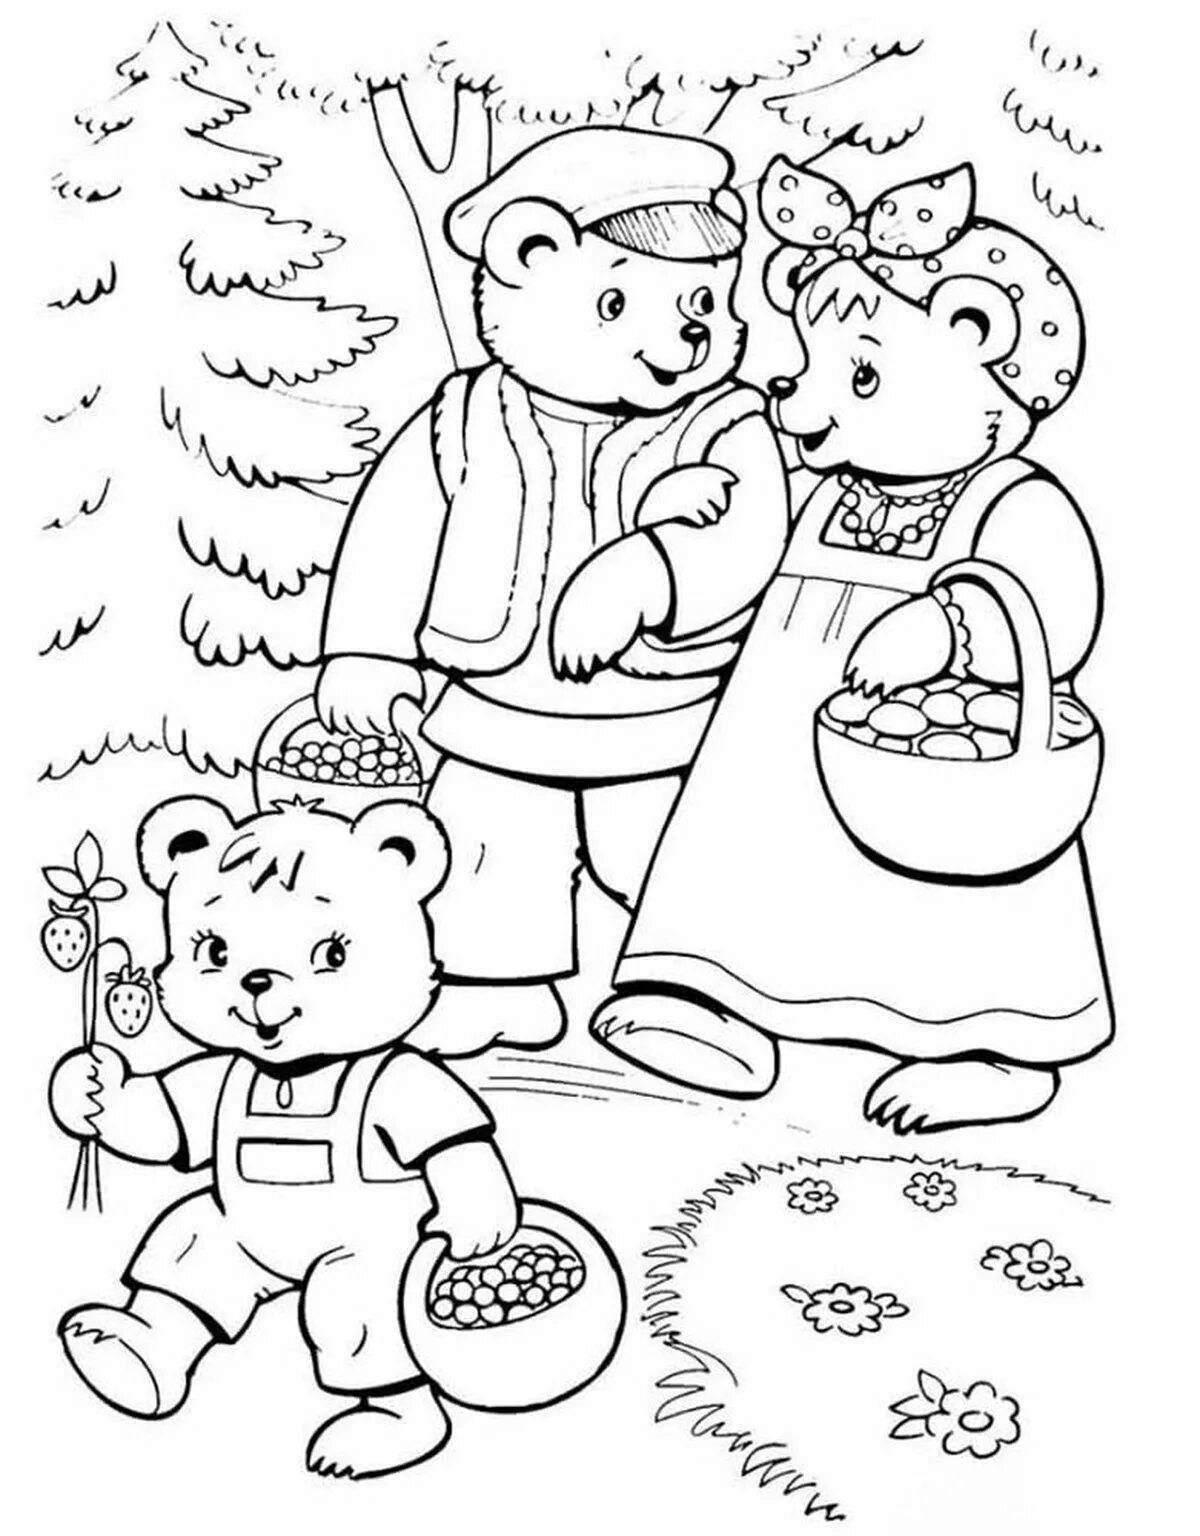 Иллюстрации к сказкам раскраски. Маша и три медведя сказка раскраска. Раскраска. Три медведя. Три медведя раскраска для детей. Раскраска к сказке три медведя для детей.